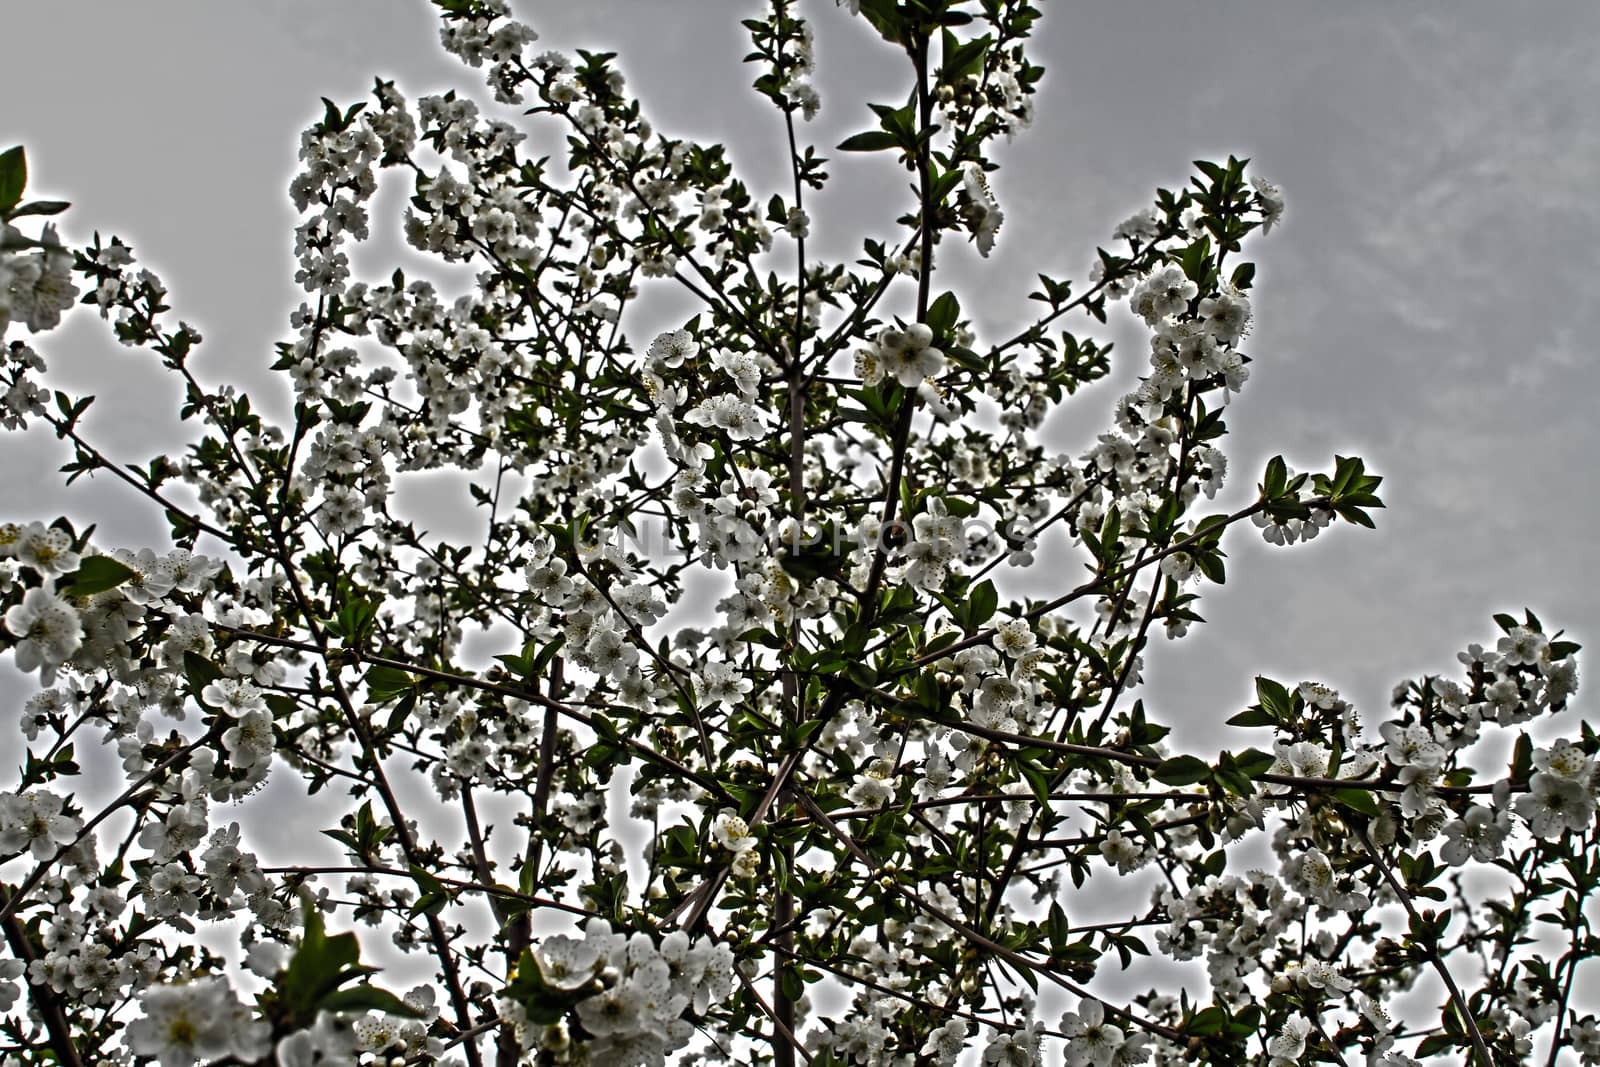 flowering tree in spring by alex_nako